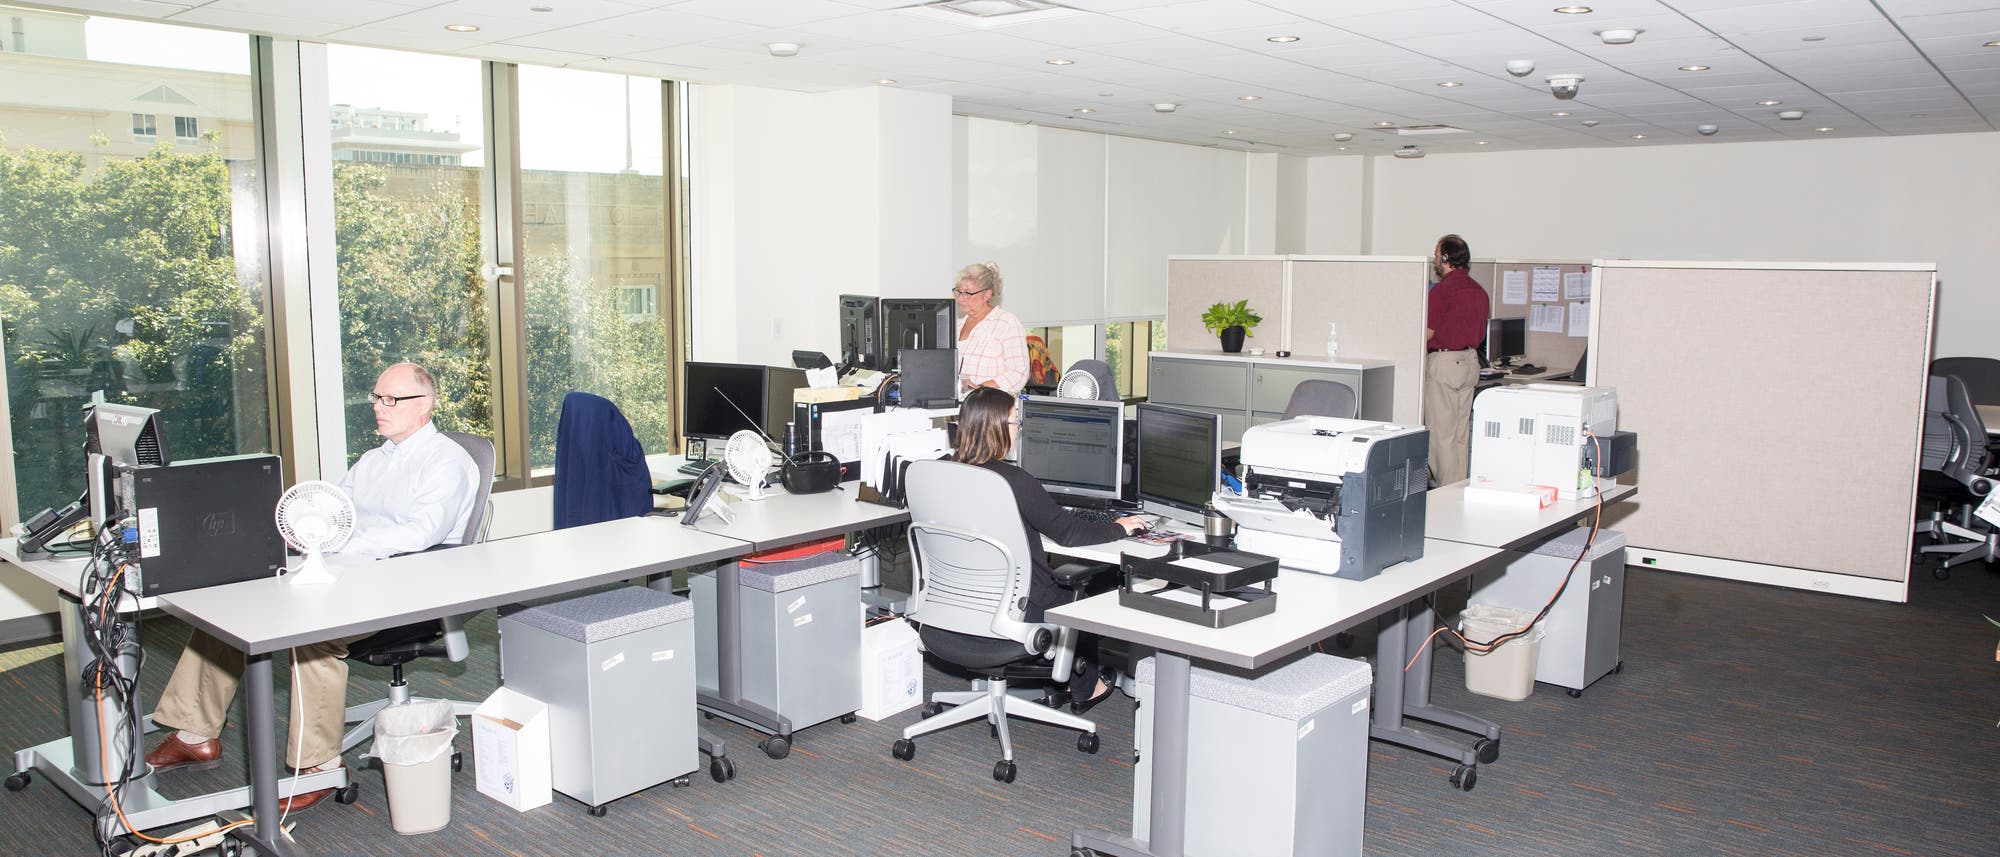 Ein Büroraum mit mehreren Tischen, auf denen sich diverse Büromaterialien und ein Computermonitor befinden.